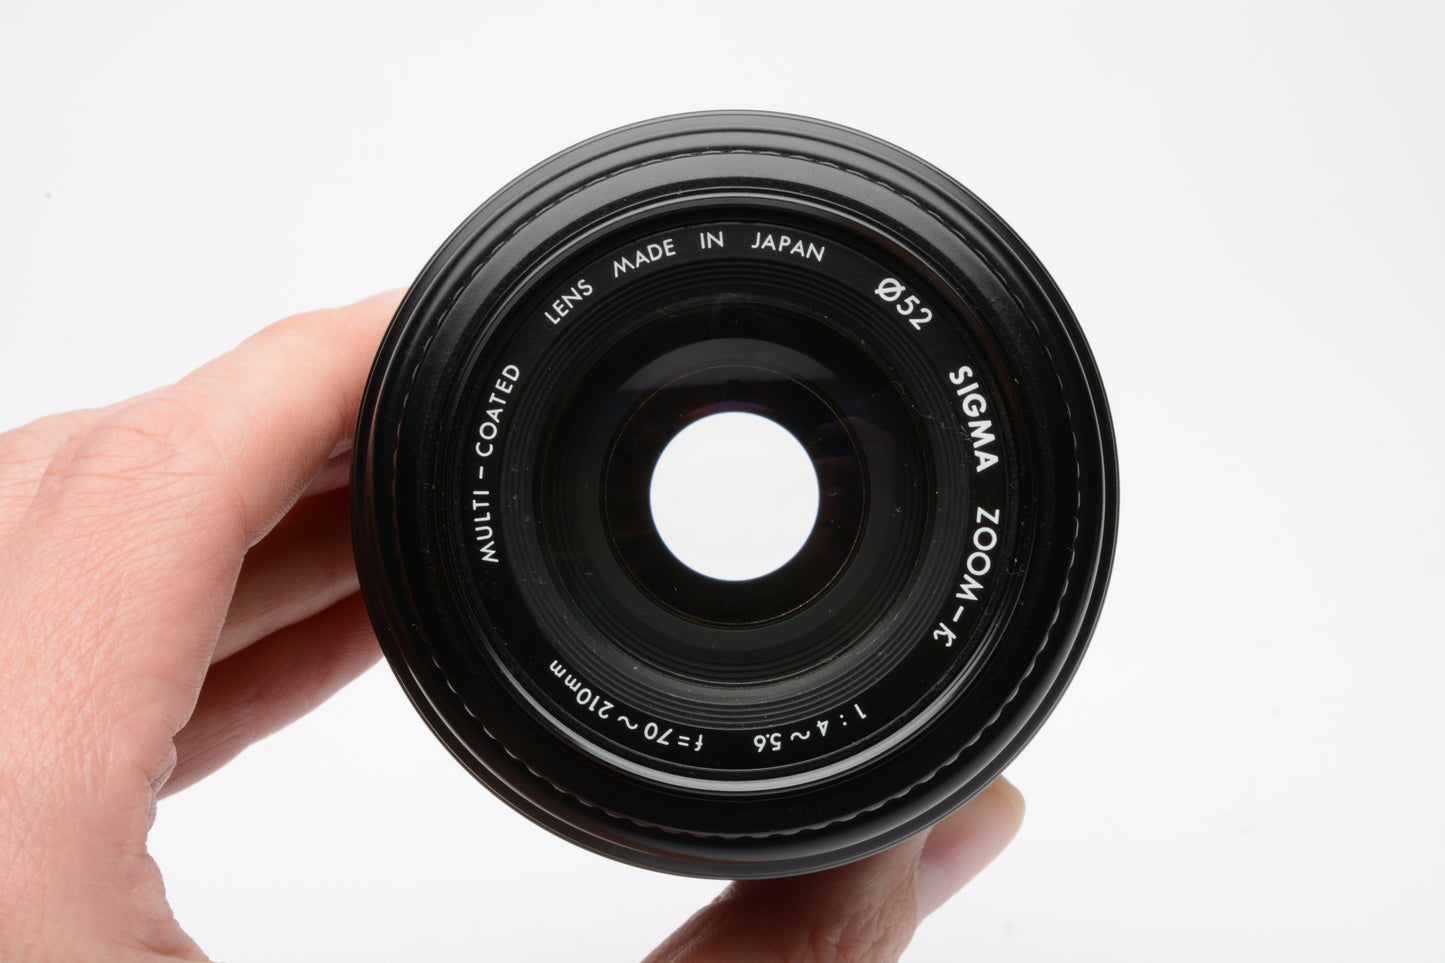 Sigma zoom K AF 70-210mm f4-5.6 MC for Nikon, caps + case